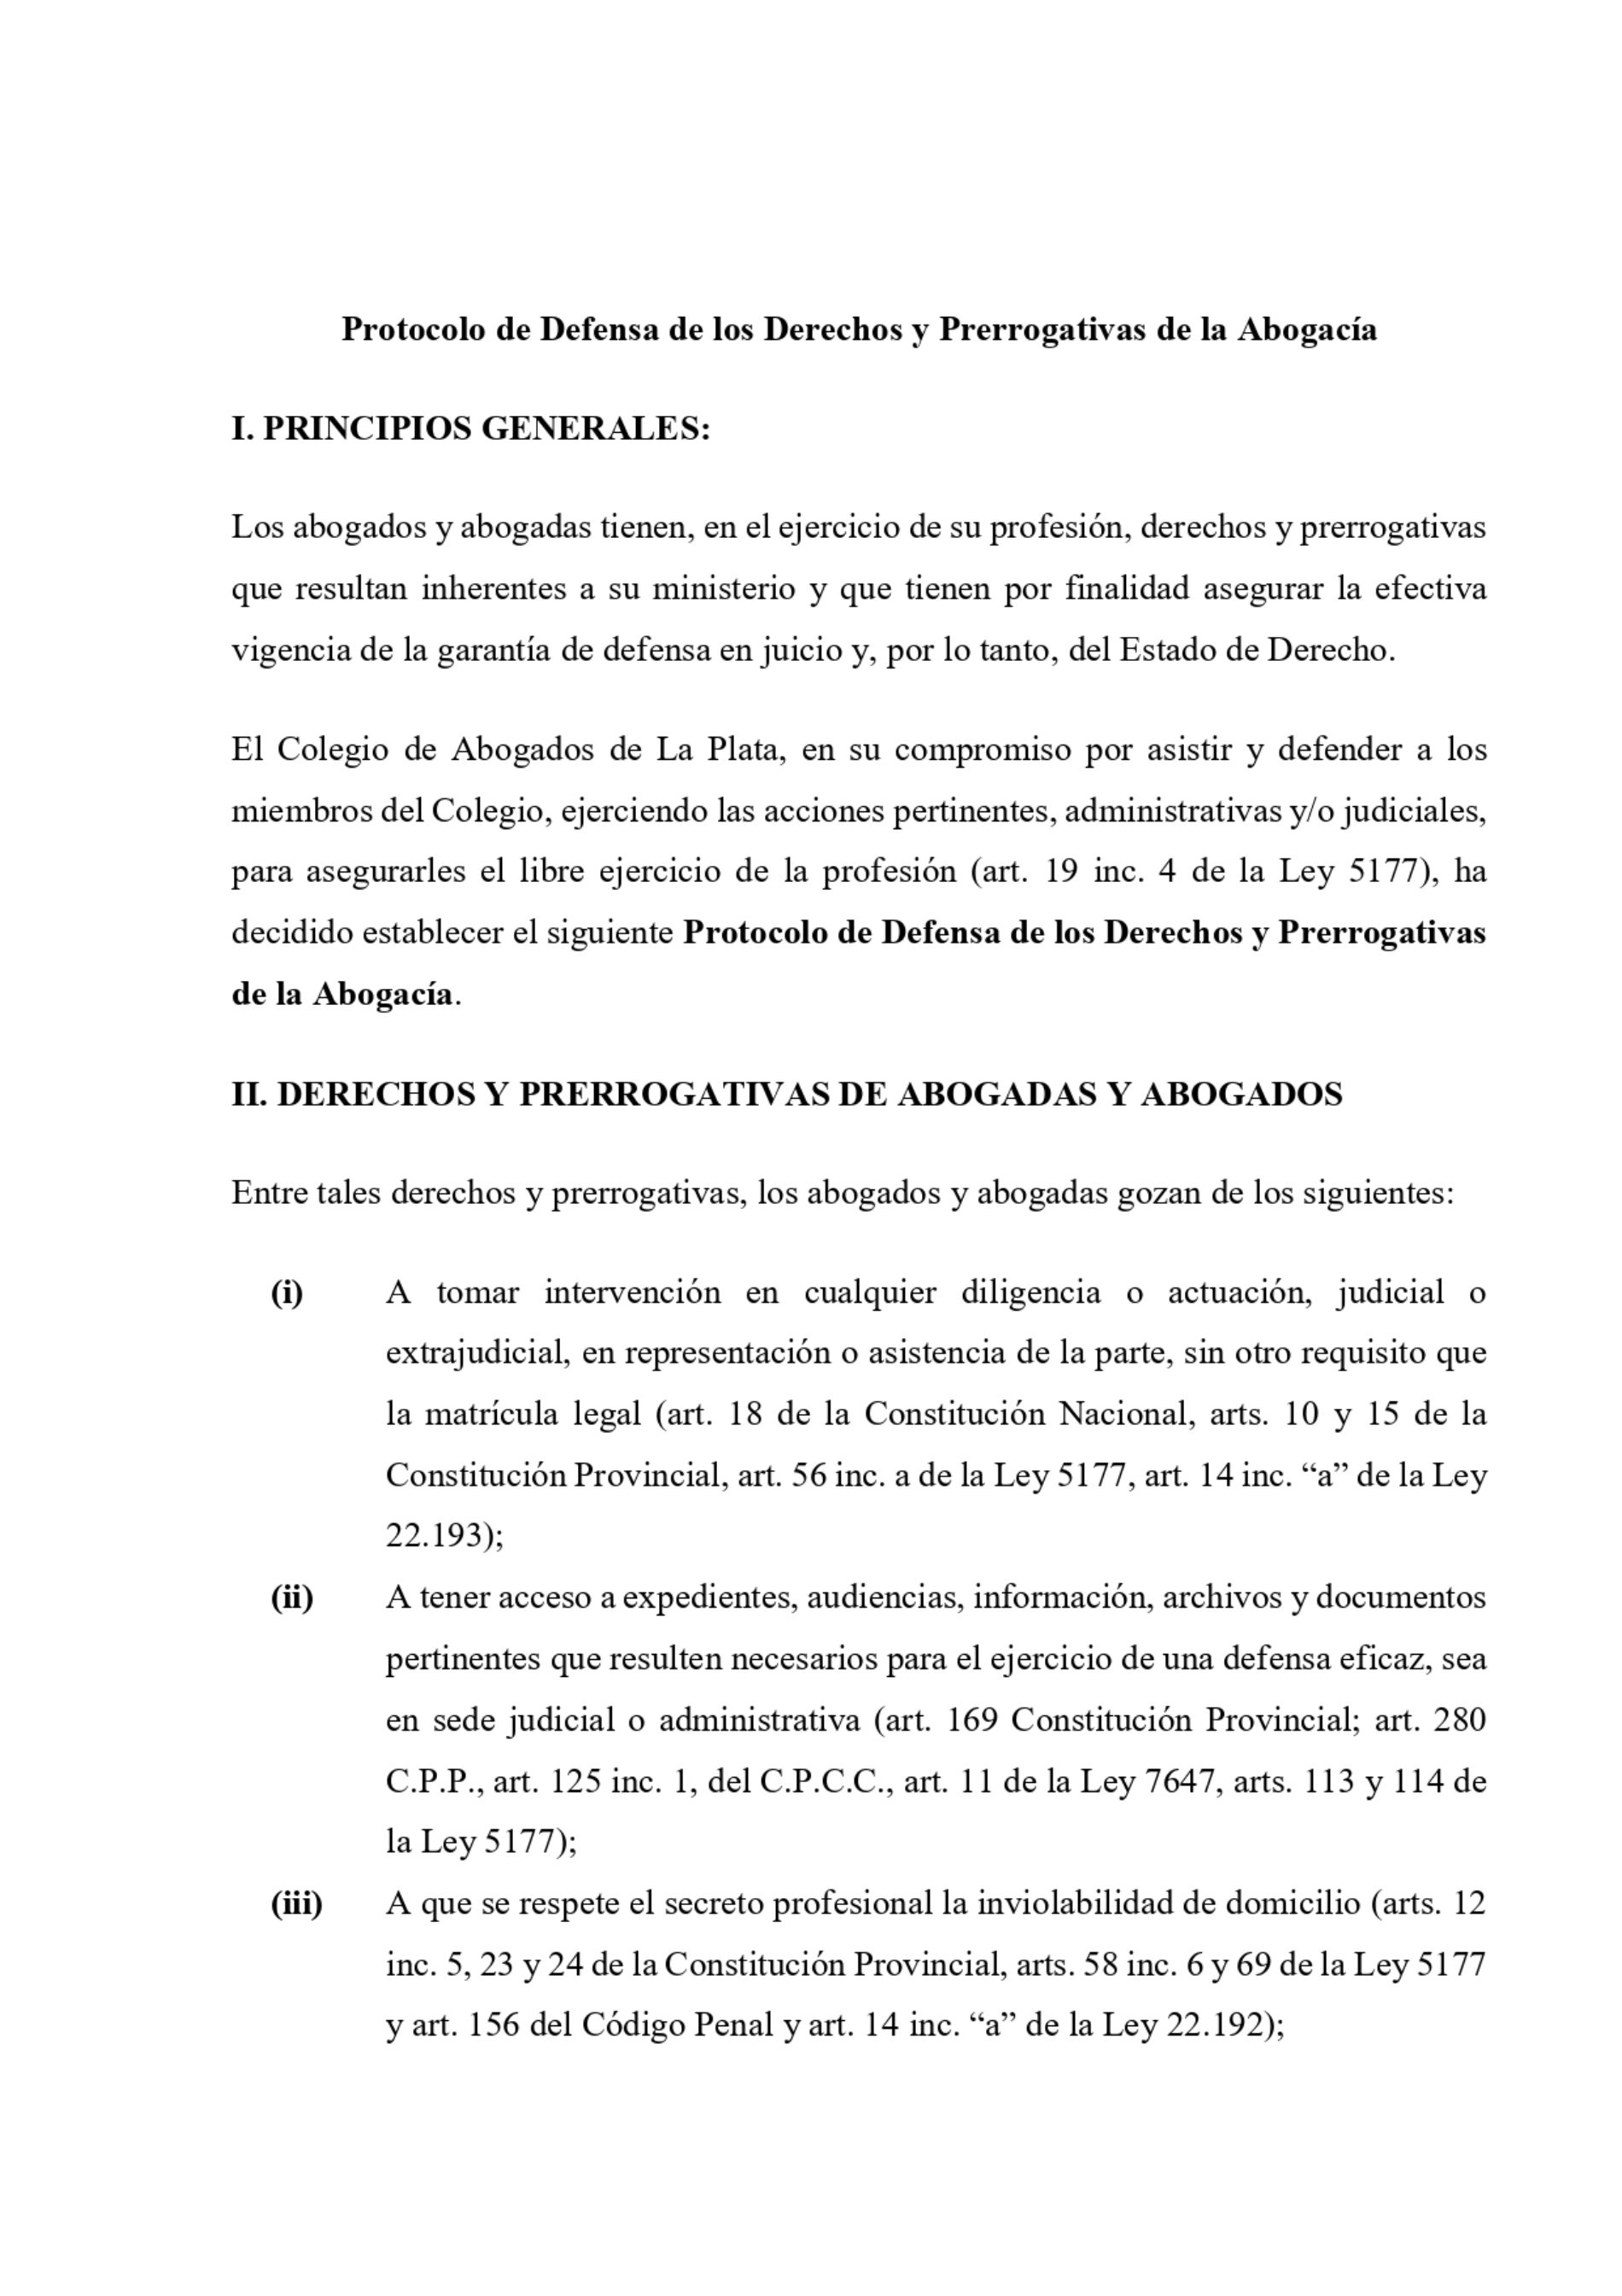 Colegio de Abogados de La Plata: » Protocolo de Defensa de los Derechos y Prerrogativas de la Abogacía «